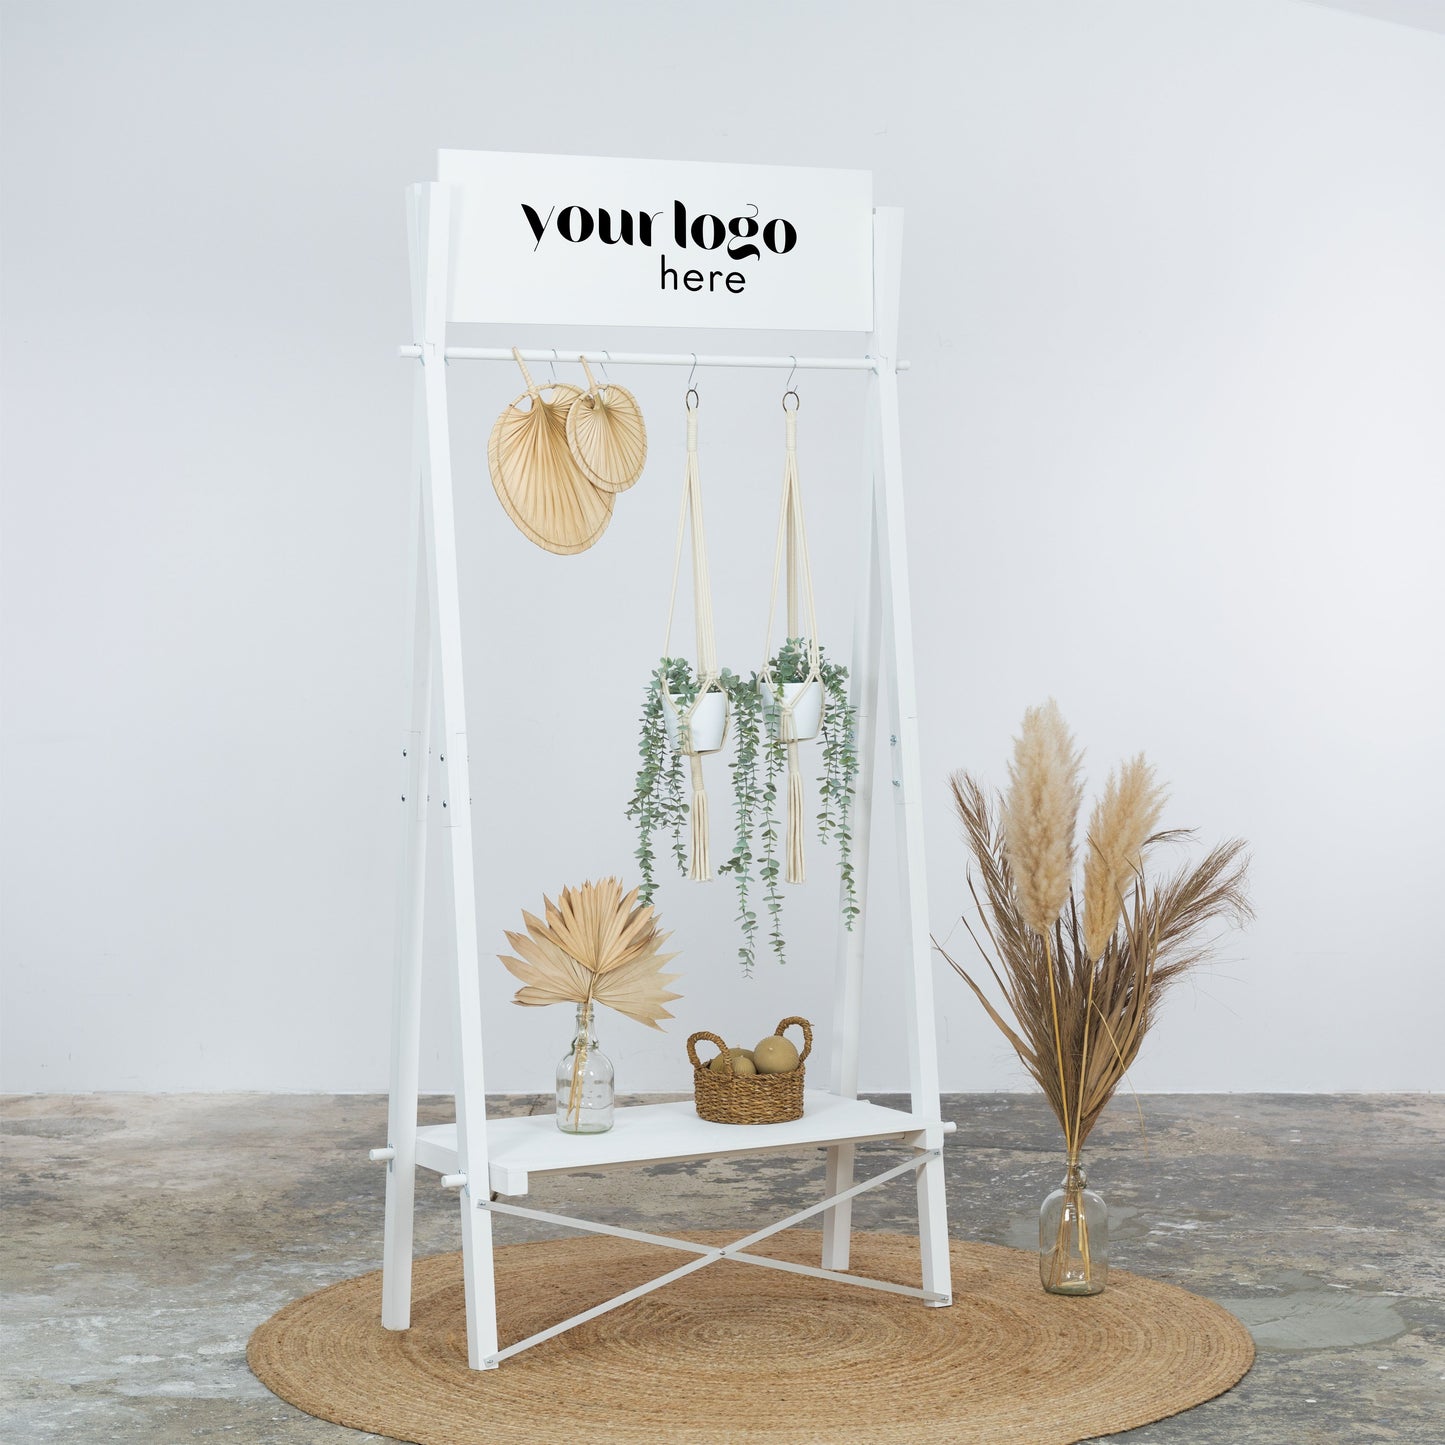 Tragbarer Kleiderständer aus Holz VR-02-WT mit individueller Logotafel | Pop-up-Store